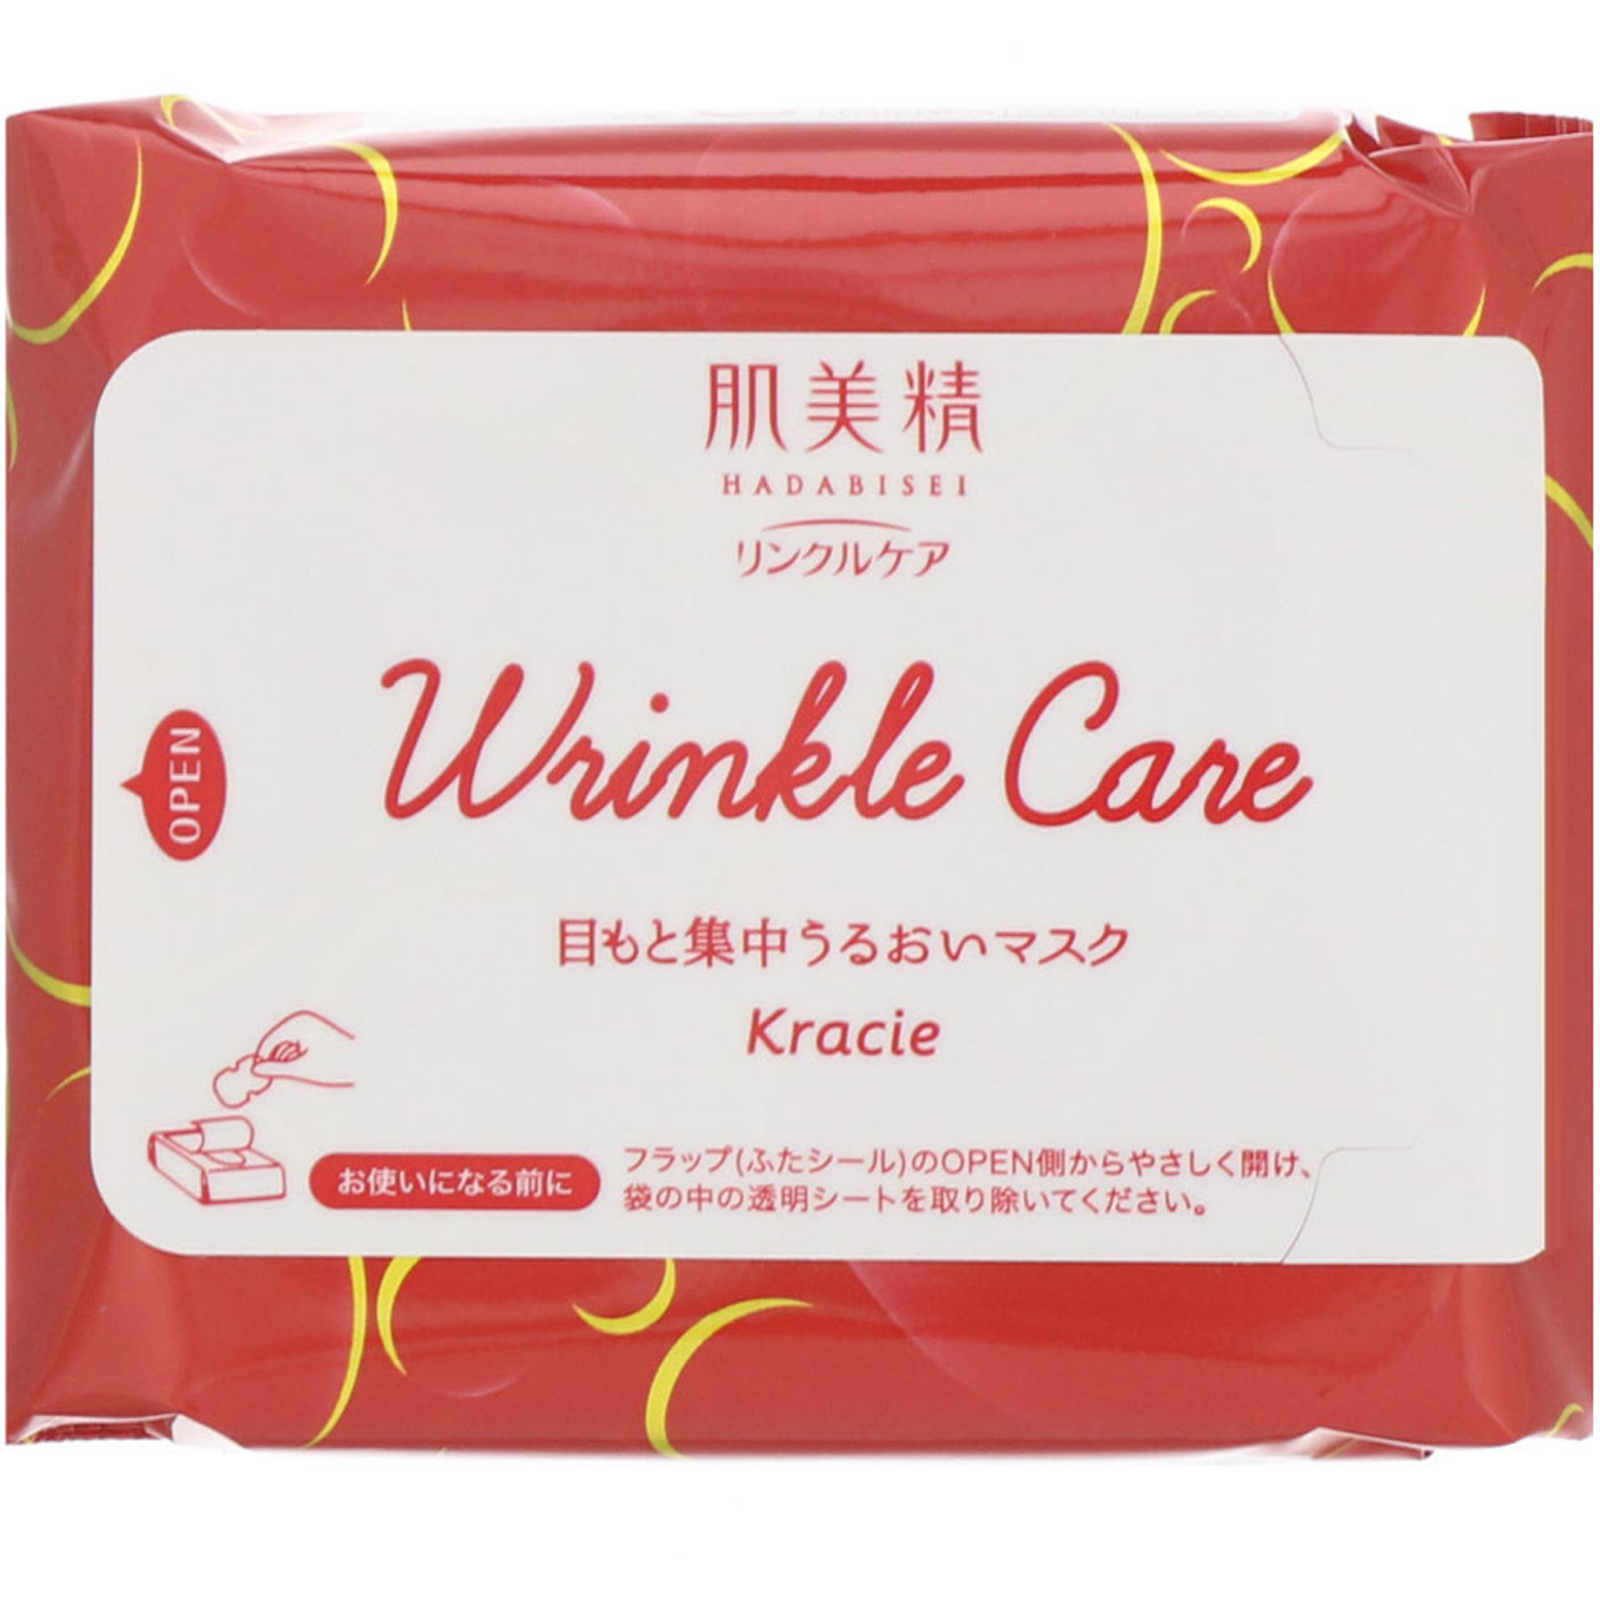 hadabisei lift wrinkle pack crema